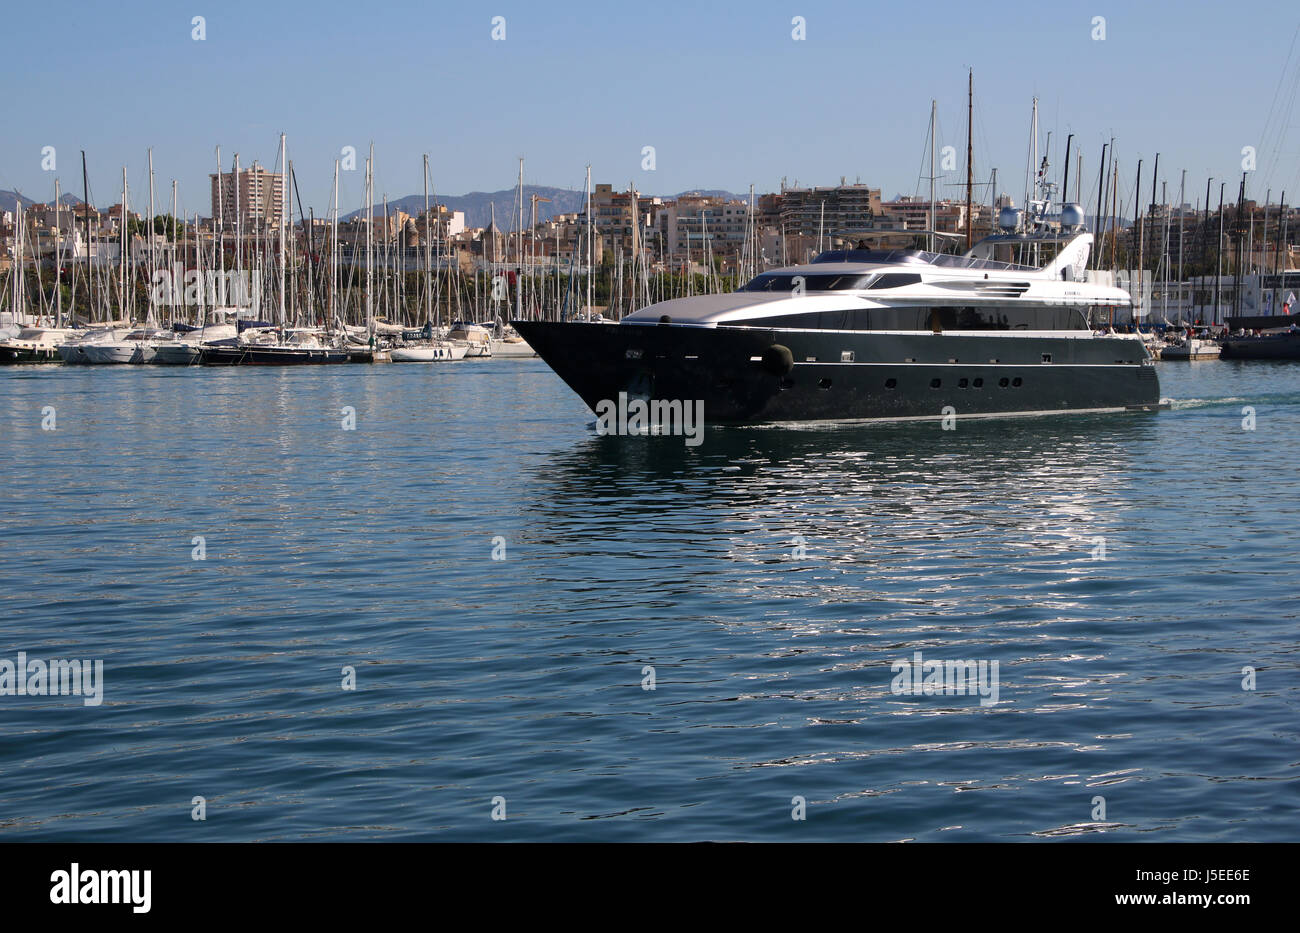 Image - Luxury Motor Superyacht “TAMARA RD“ (35m, built in 2010 by ...